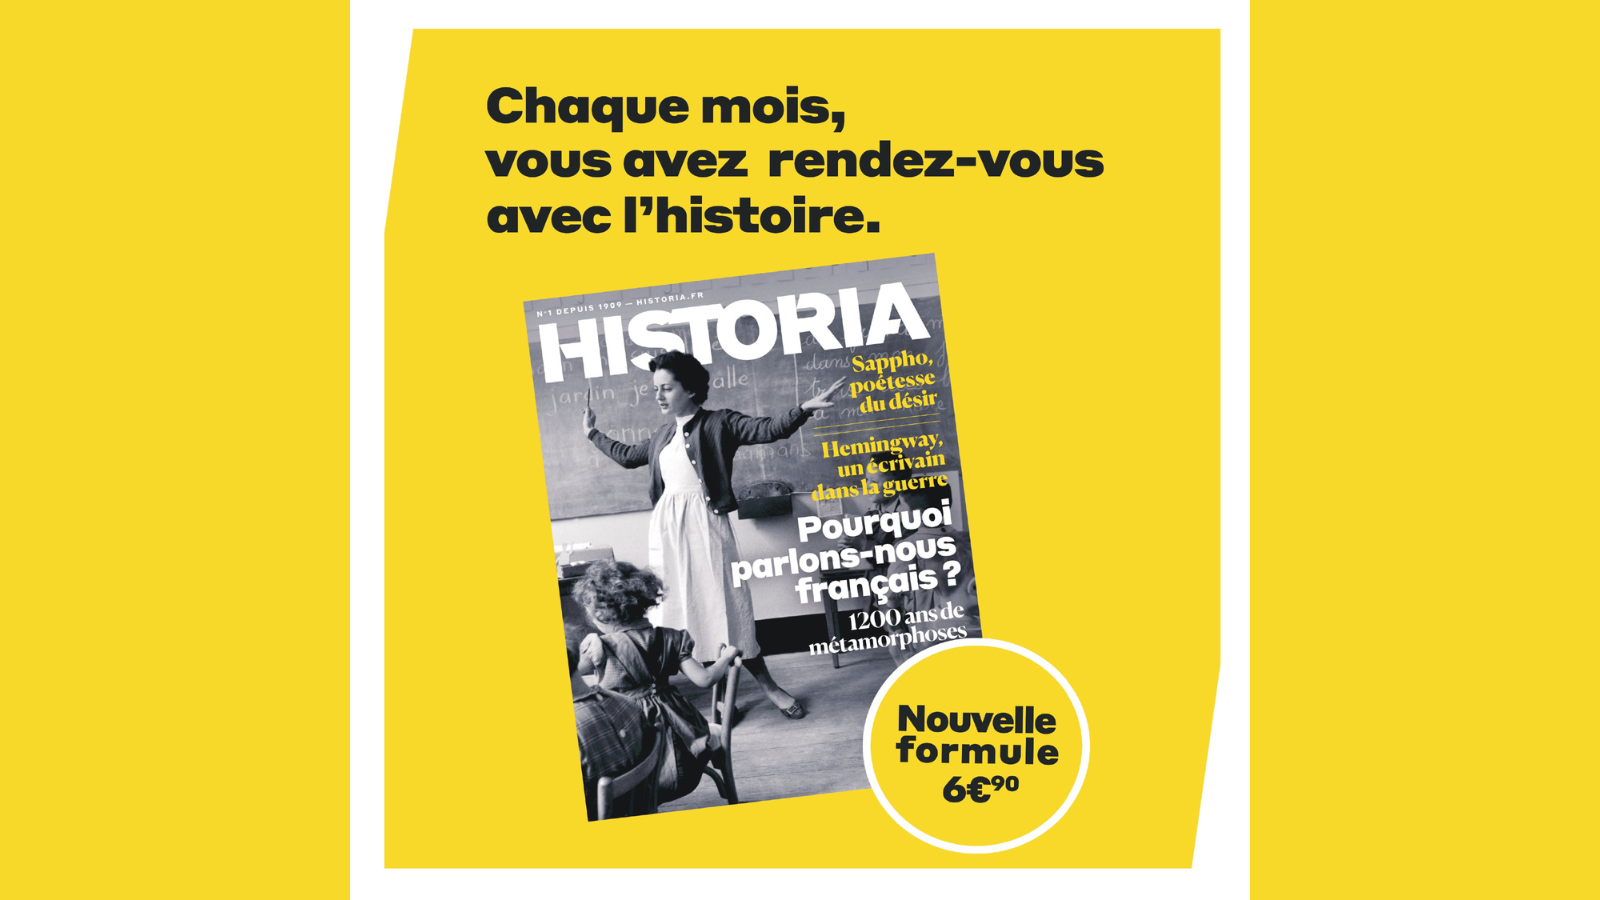 Le magazine Historia lance sa nouvelle formule en mars et développe son offre digitale